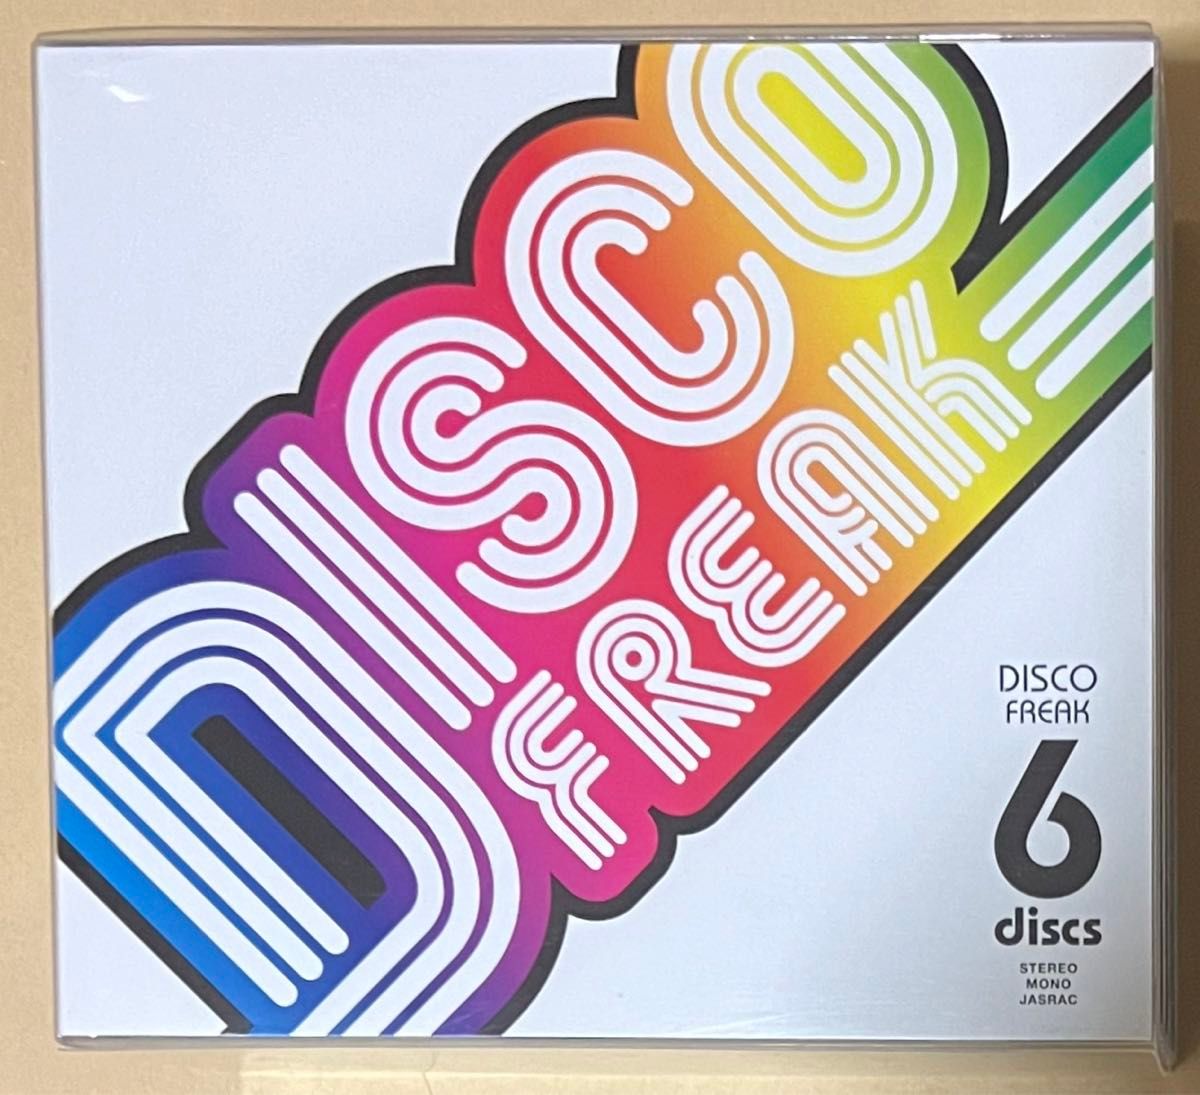 ディスコ・フリーク DISCO FREAK 6枚組CD Sony BMG UNIVERSAL Victor